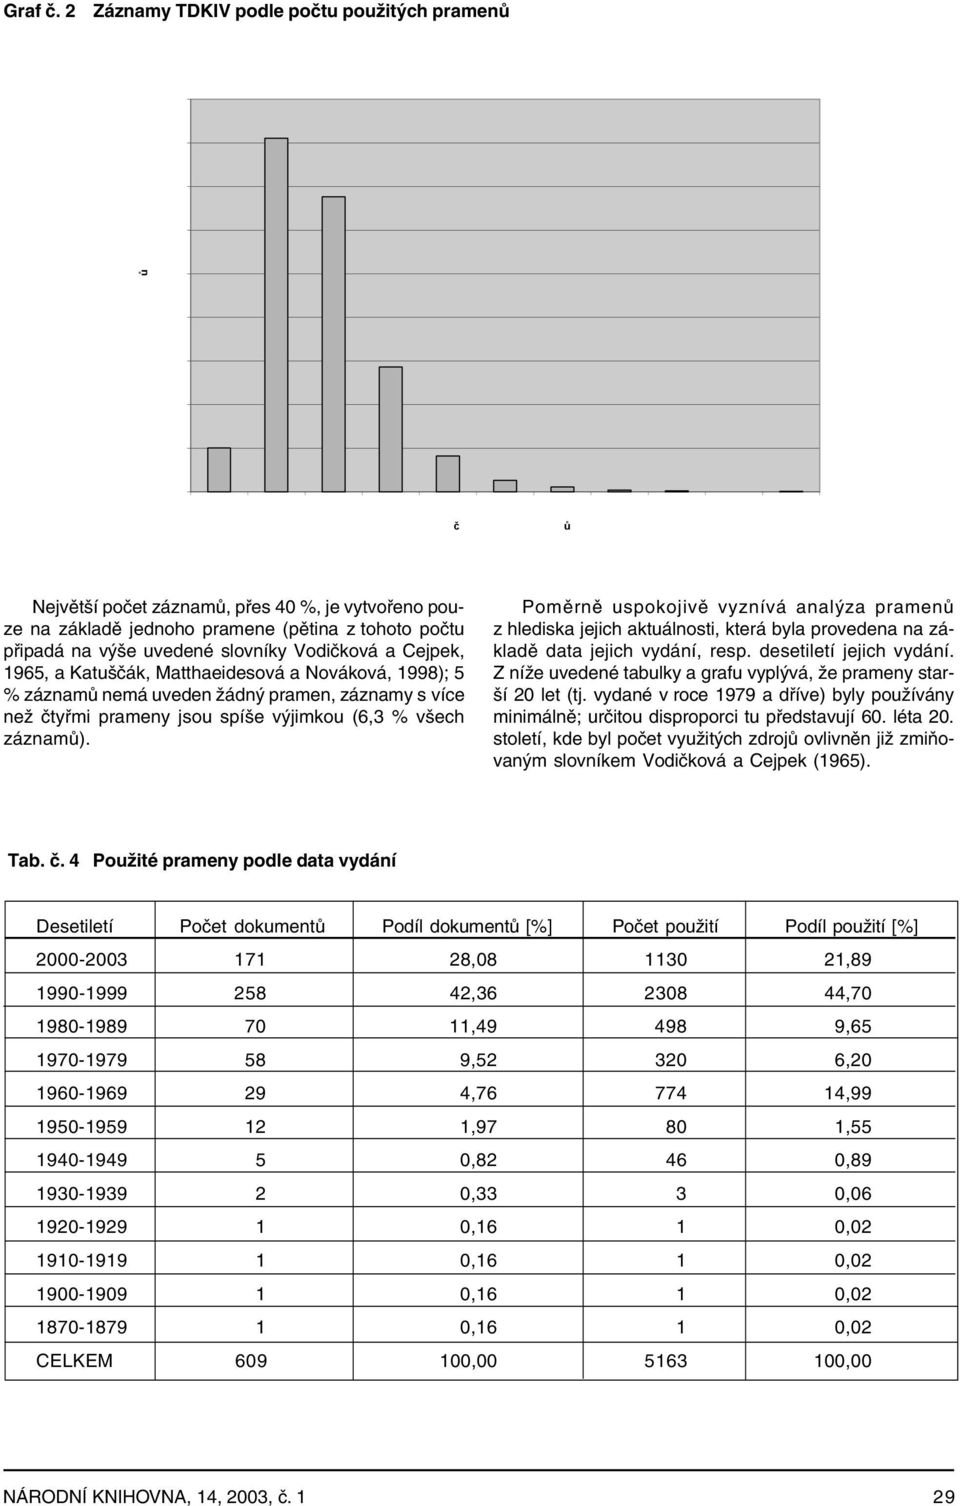 Cejpek, 1965, a Katuščák, Matthaeidesová a Nováková, 1998); 5 % záznamů nemá uveden žádný pramen, záznamy s více než čtyřmi prameny jsou spíše výjimkou (6,3 % všech záznamů).